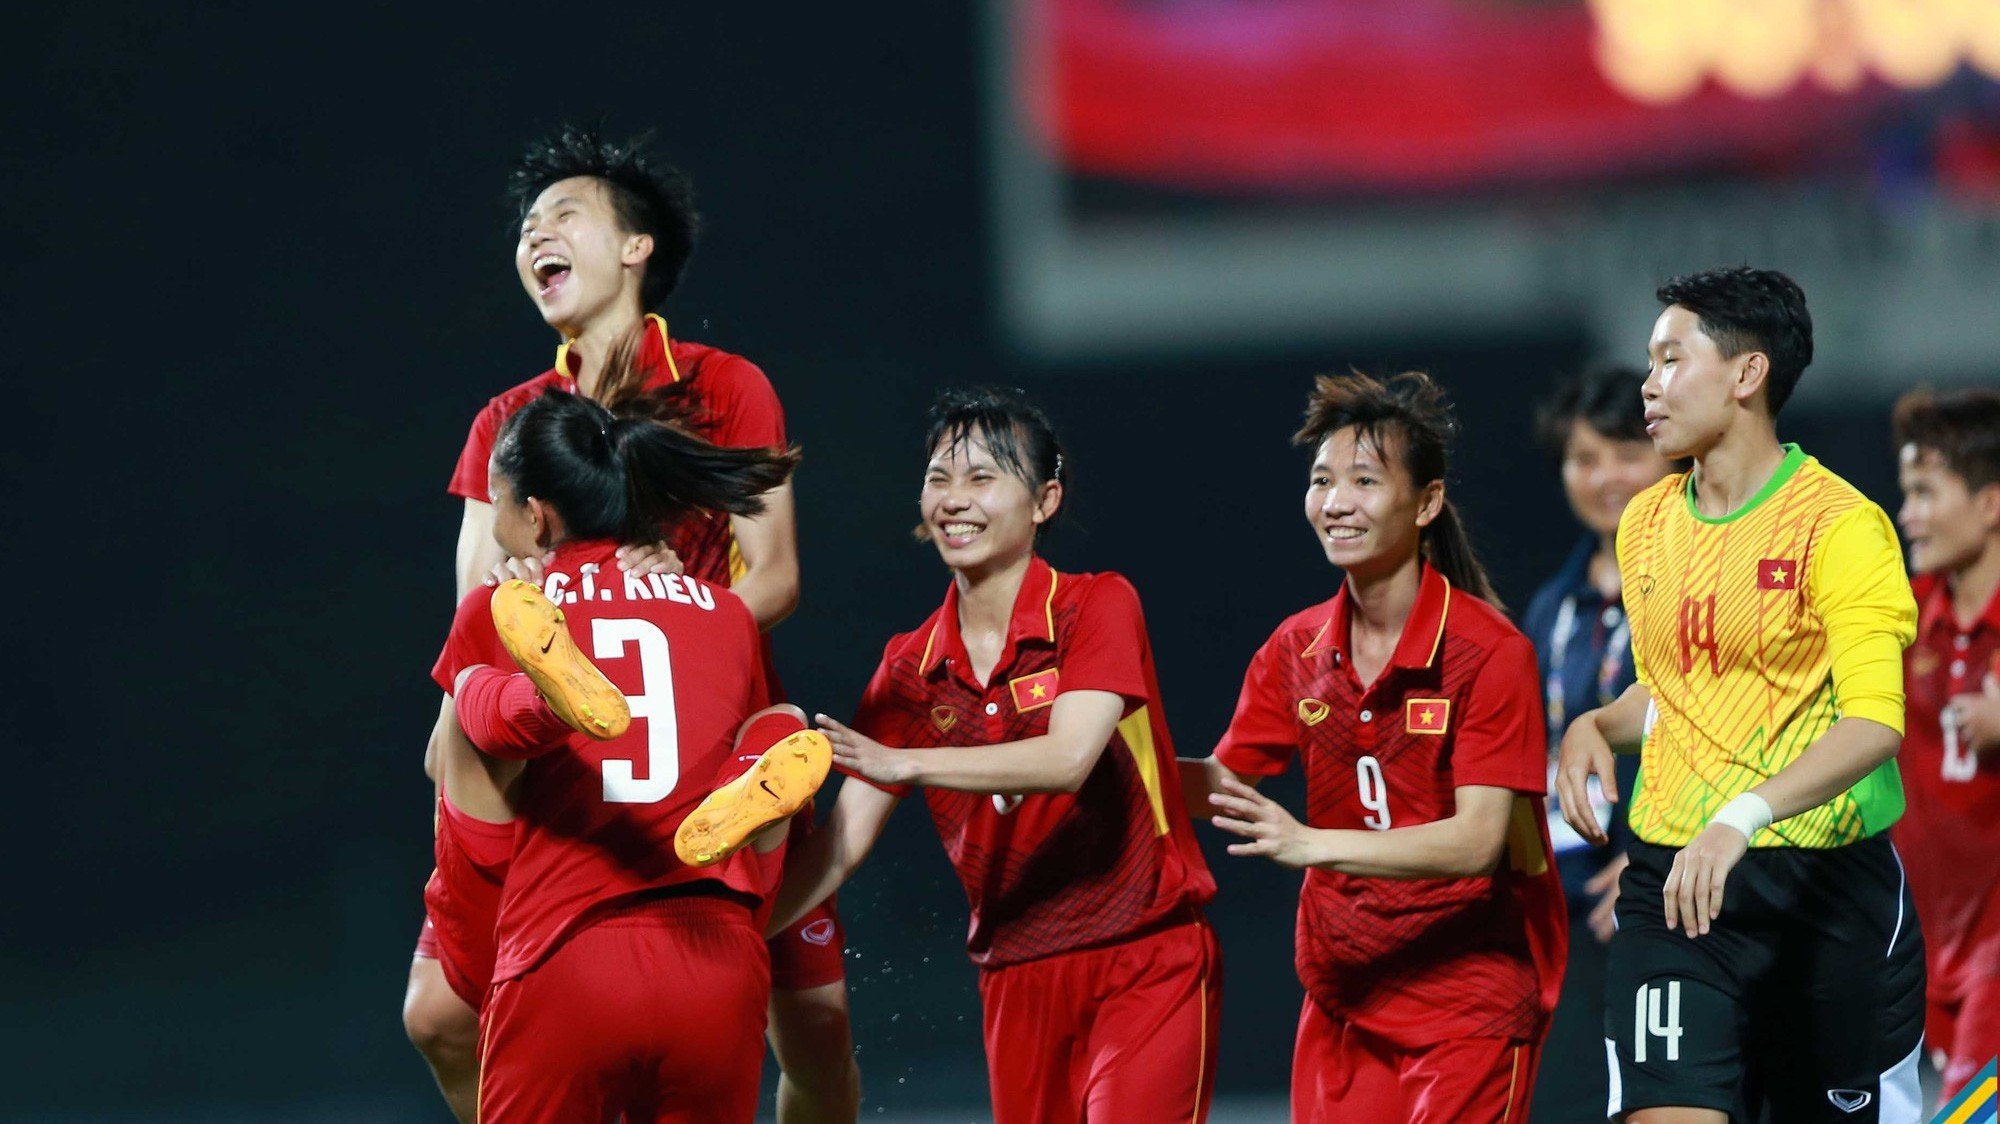 Thể thao - Bóng đá nữ và mục tiêu World Cup: Muốn thành công, chúng ta cần triệu tập các cầu thủ nữ Việt kiều?